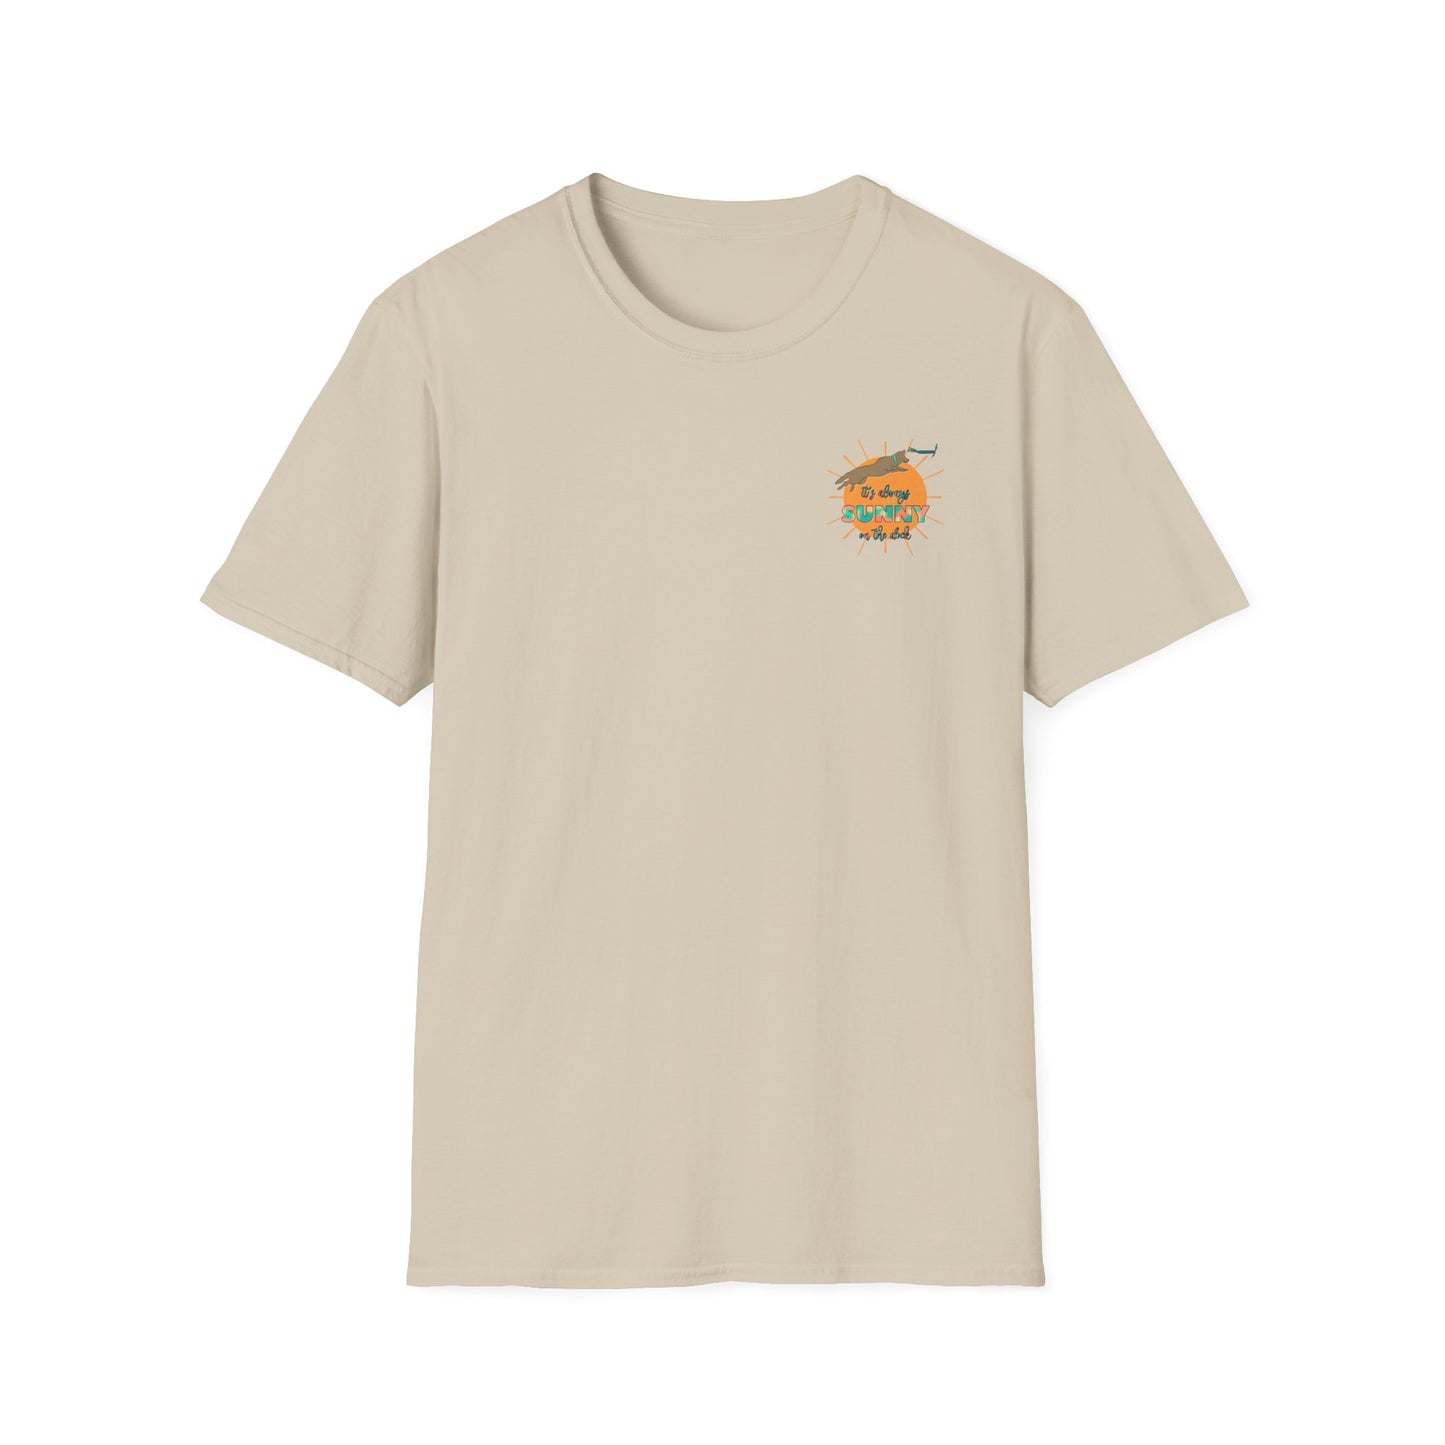 SUNNY Unisex Softstyle T-Shirt